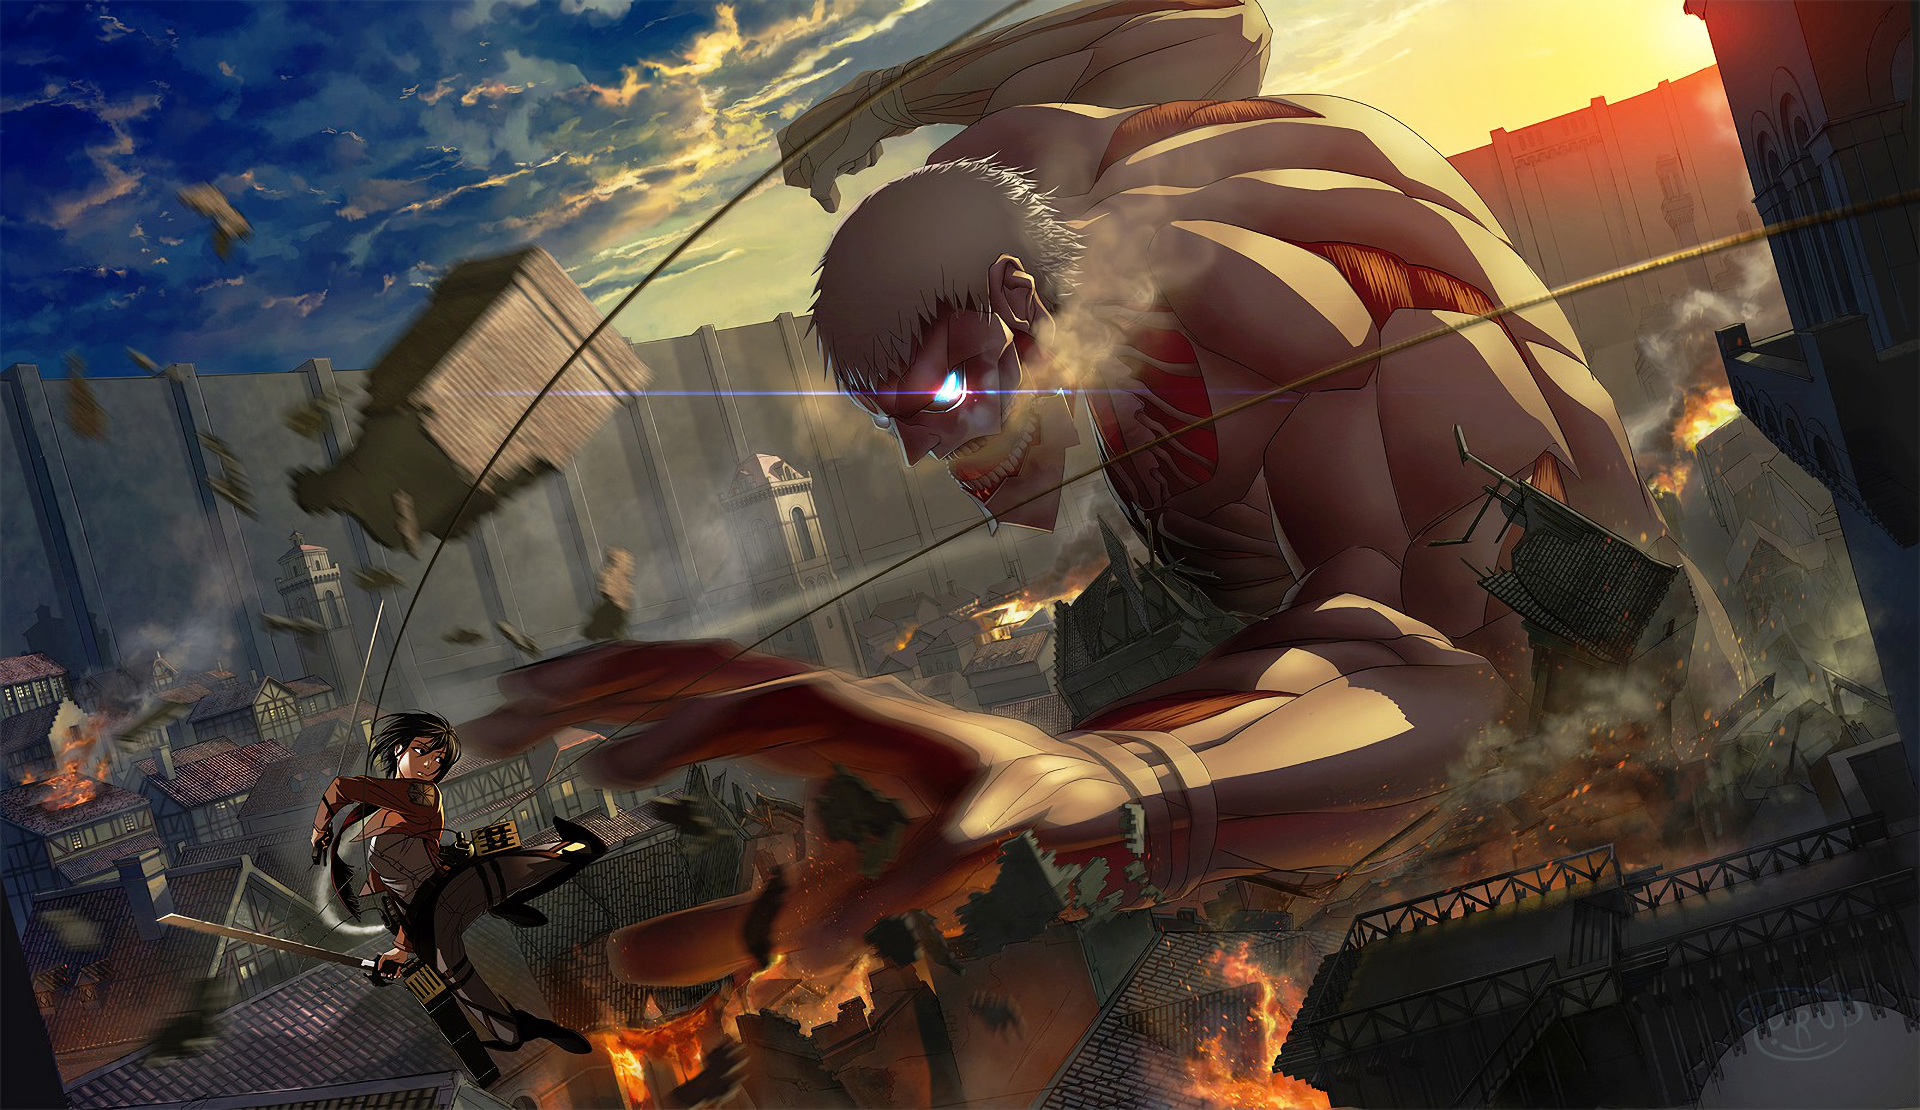 Anime L'Attaque des Titans Mikasa Ackerman Shingeki No Kyojin Armored Titan Jacket Epée Arme Glowing Eye. Titã encouraçado, Attack on titan, Papel de parede anime